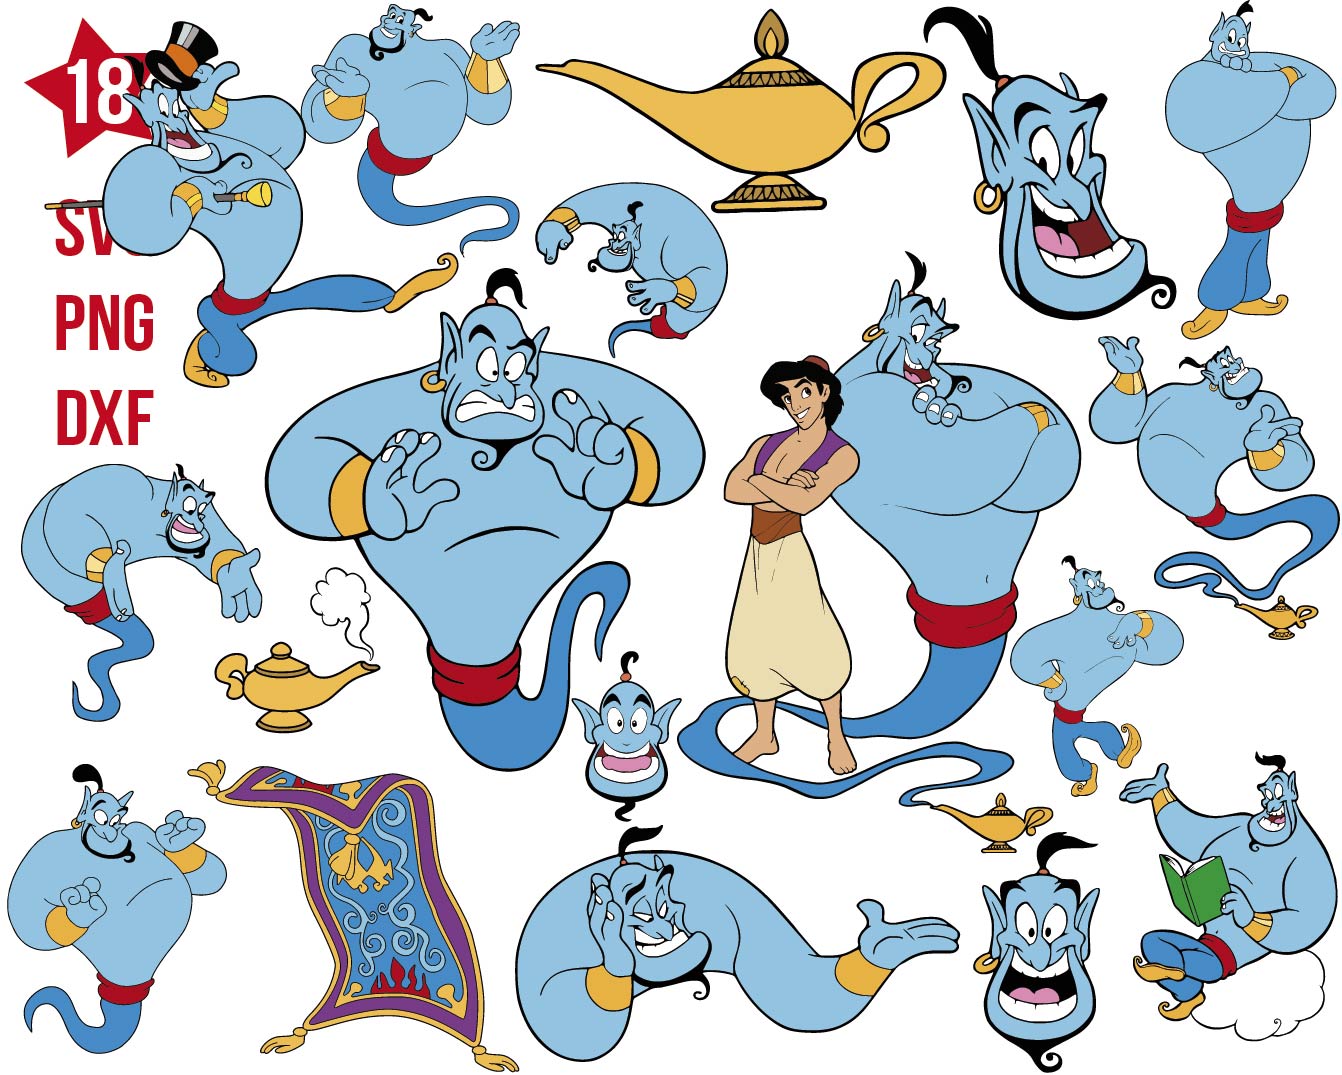 Genie Aladdin svg, Genie png, Genie dxf, Aladdin svg, Jasmine svg